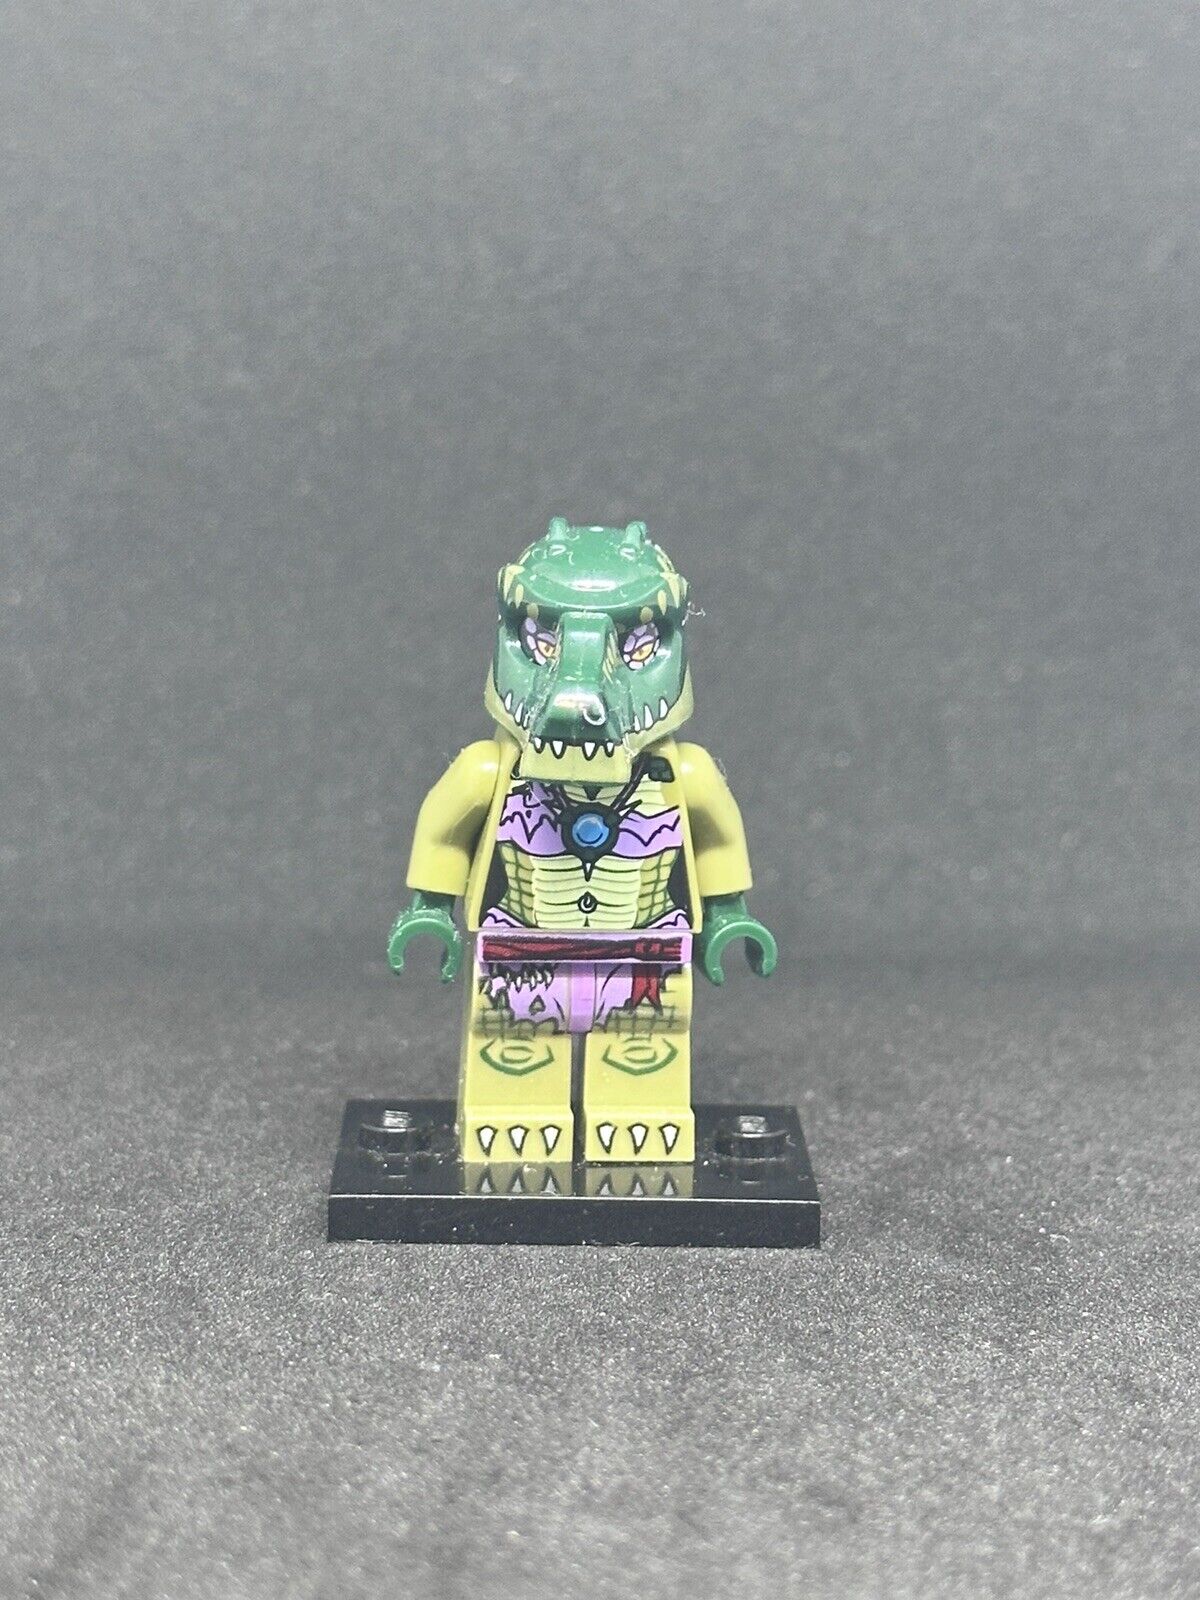 LEGO Crooler Crocodile Minifigure, Legends of Chima 70006